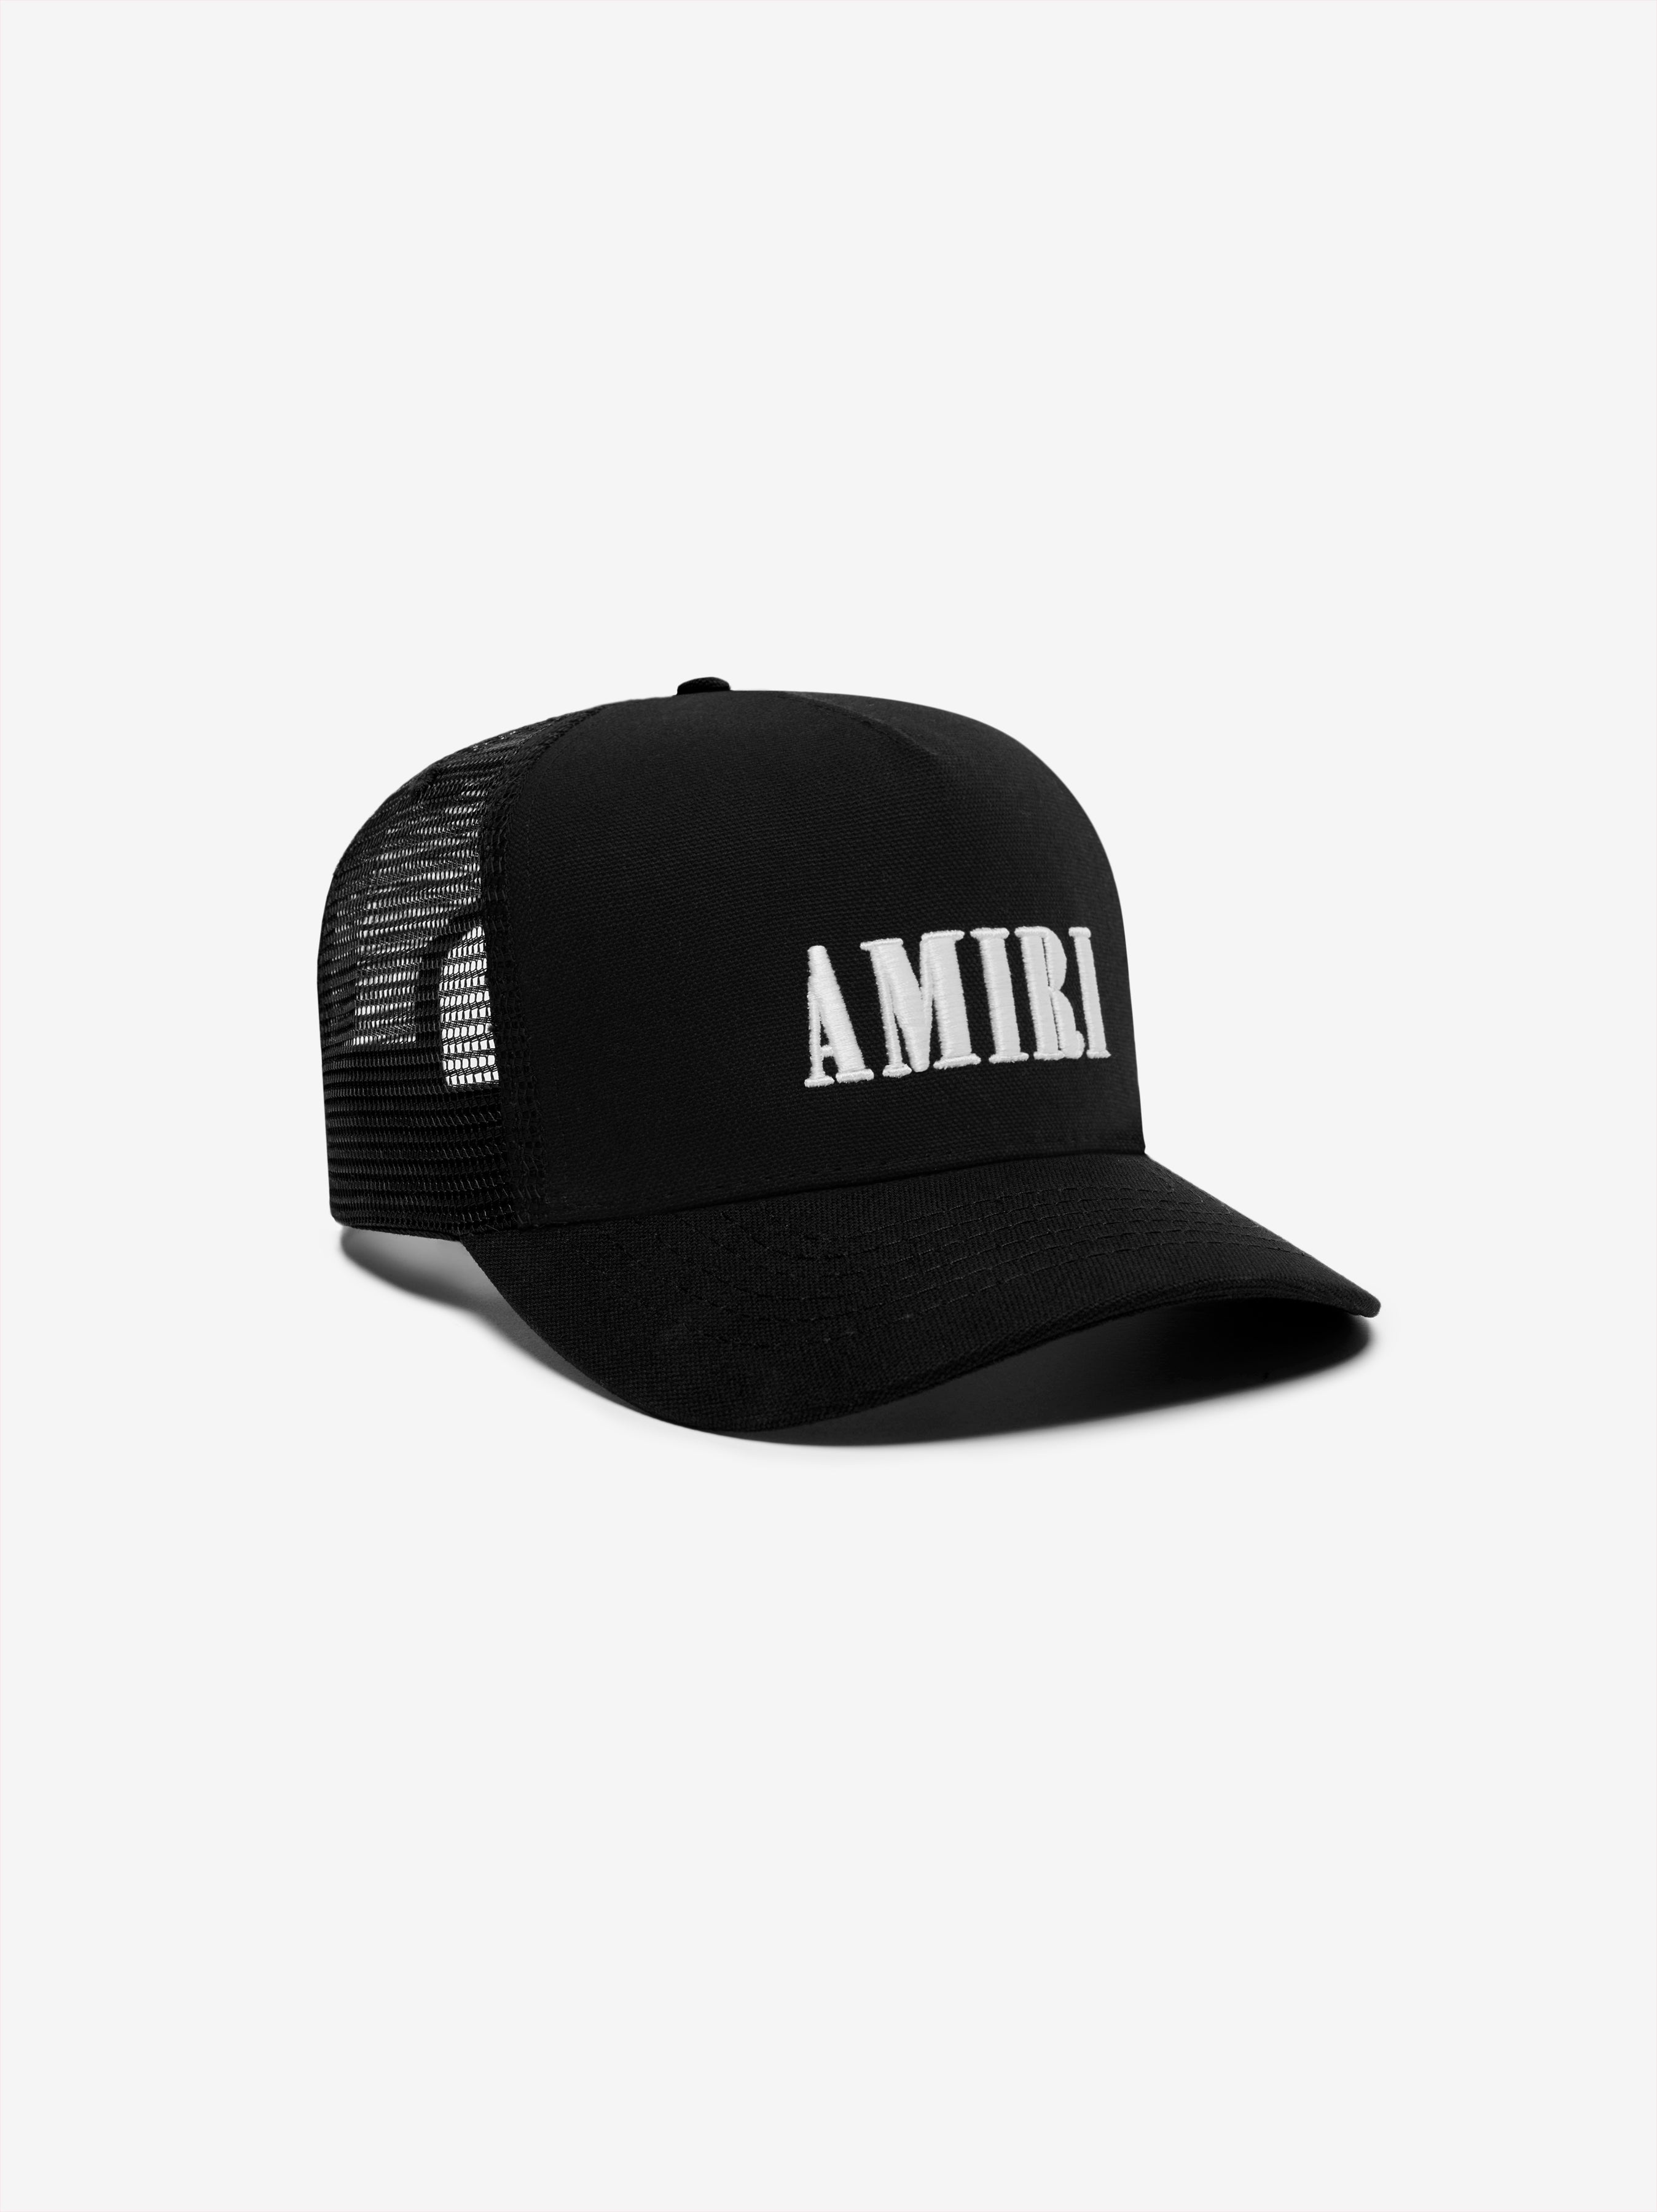 AMIRI CORE LOGO TRUCKER HAT - 3